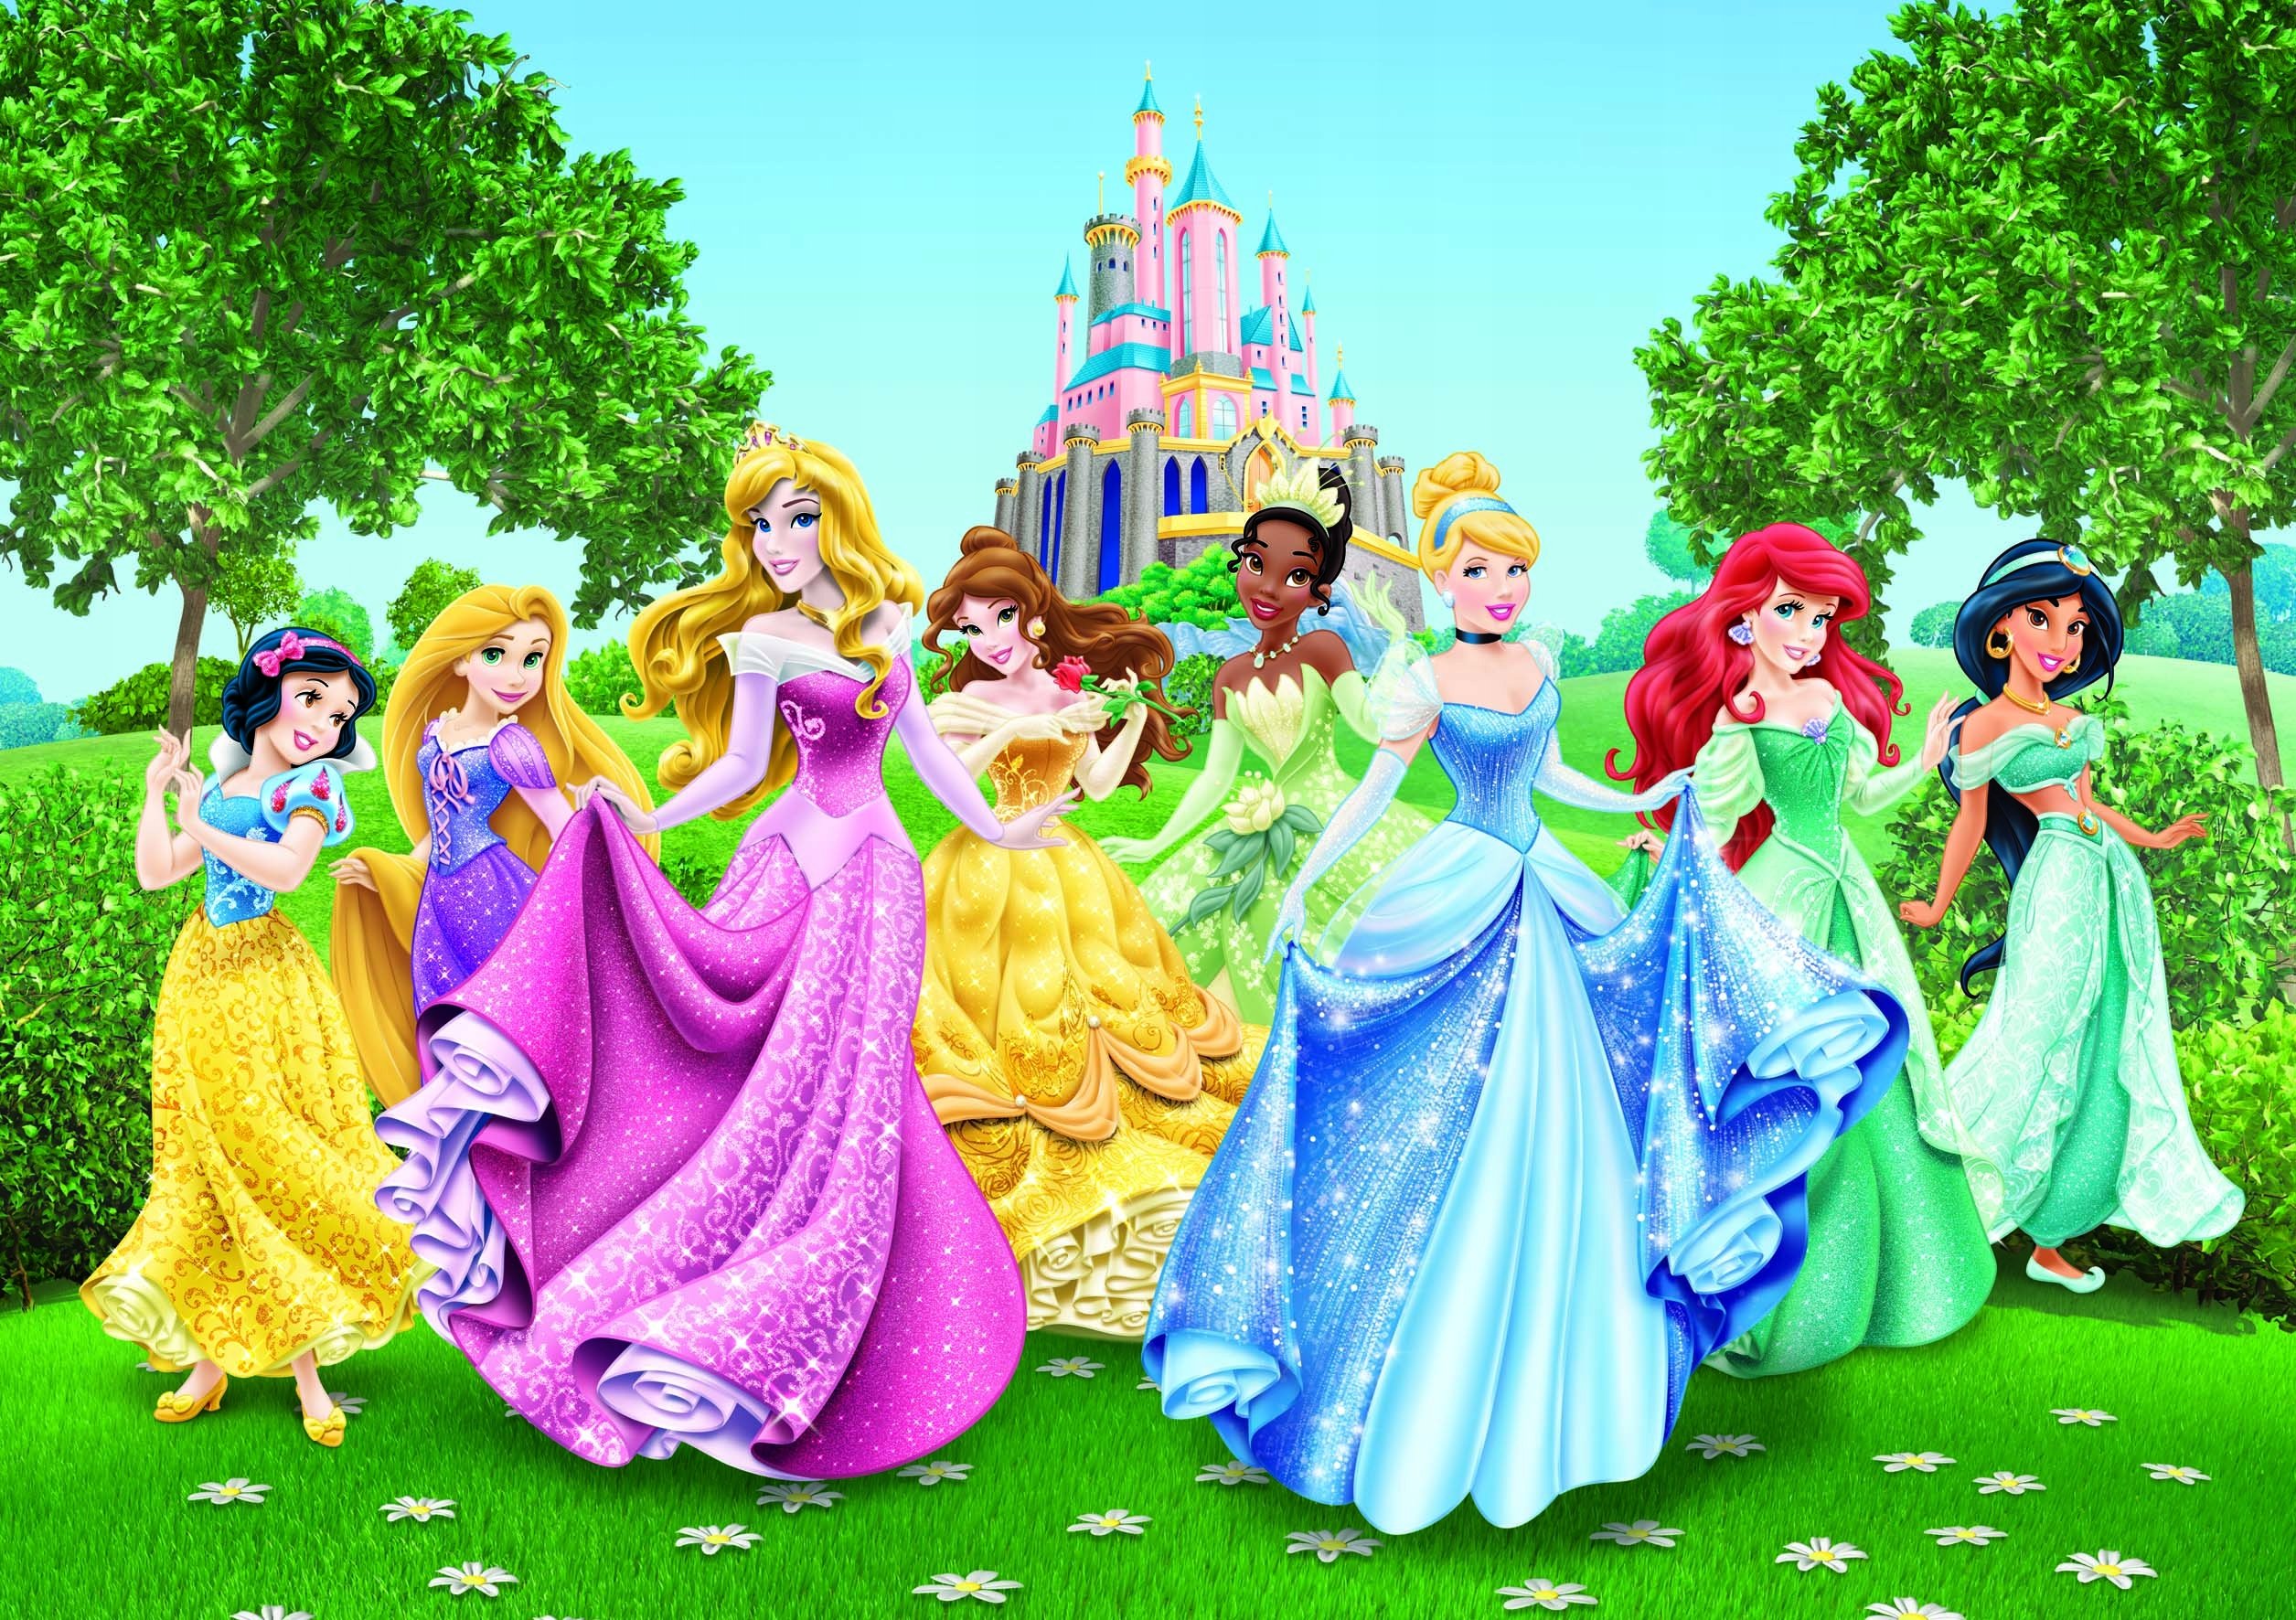 Сайт принцессы. Disney Princess принцесса Дисней. Дисней принцесса Сесилия. 4 Принцессы Диснея. Принцессы Диснея картинки.